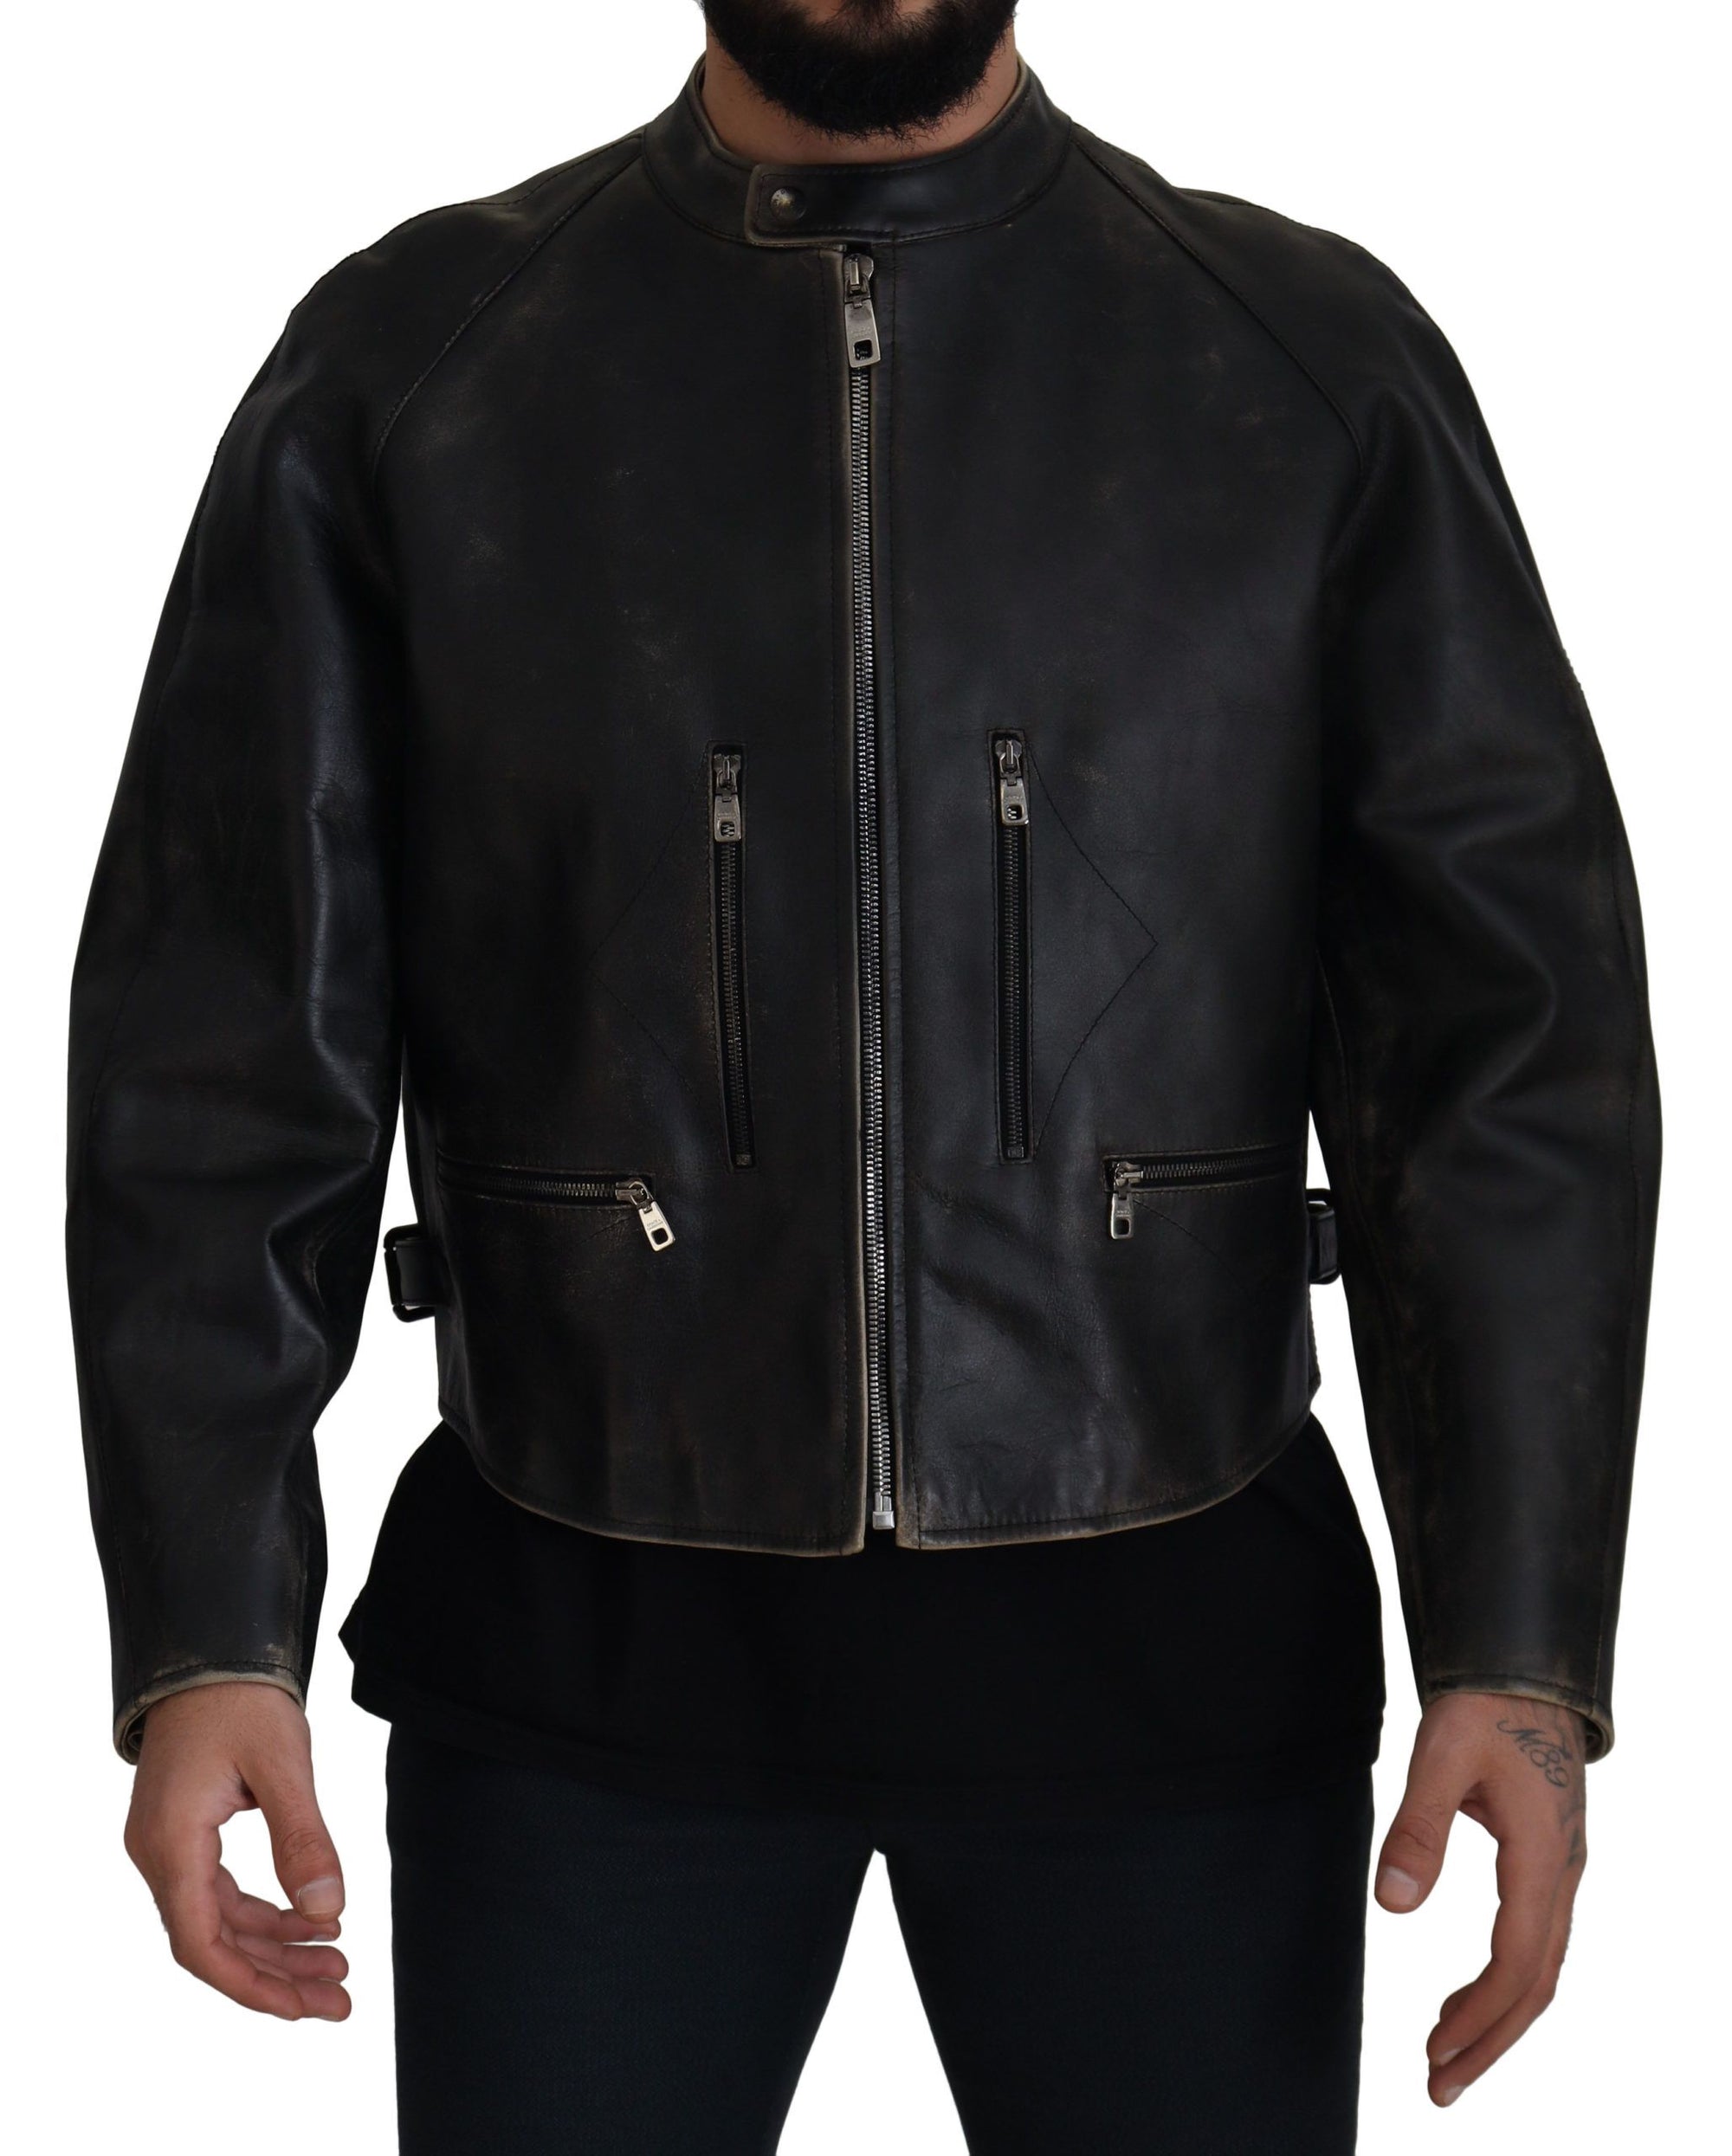 Elegant Black Leather Jacket with Silver Details